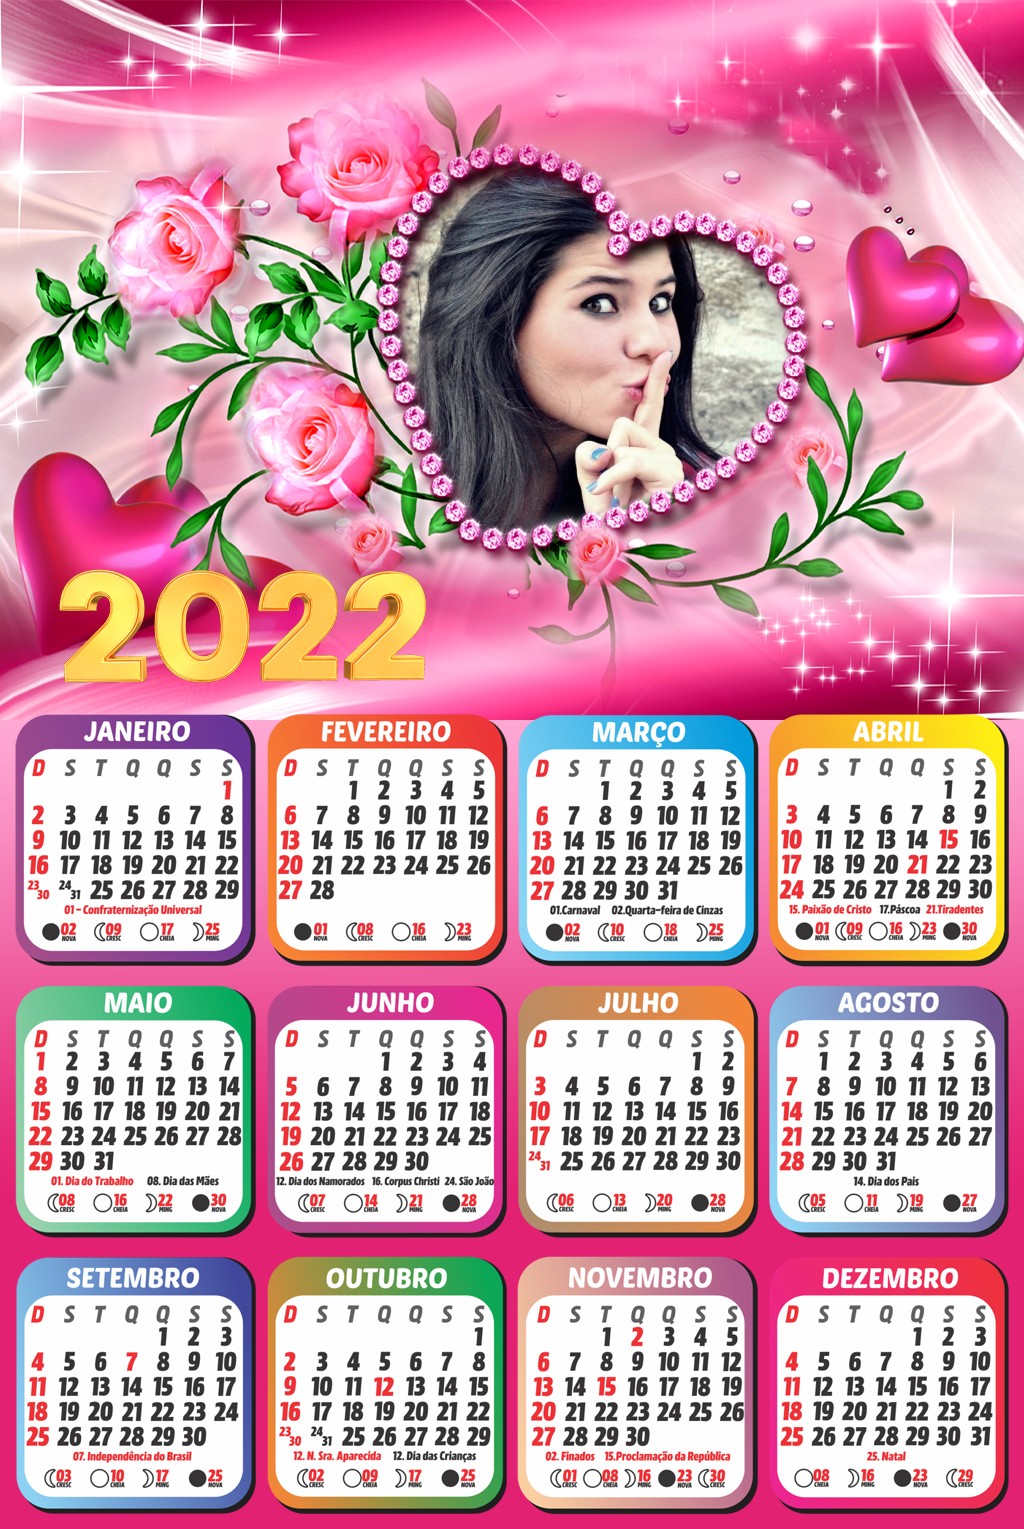 2022-gratis-com-coracao-rosa